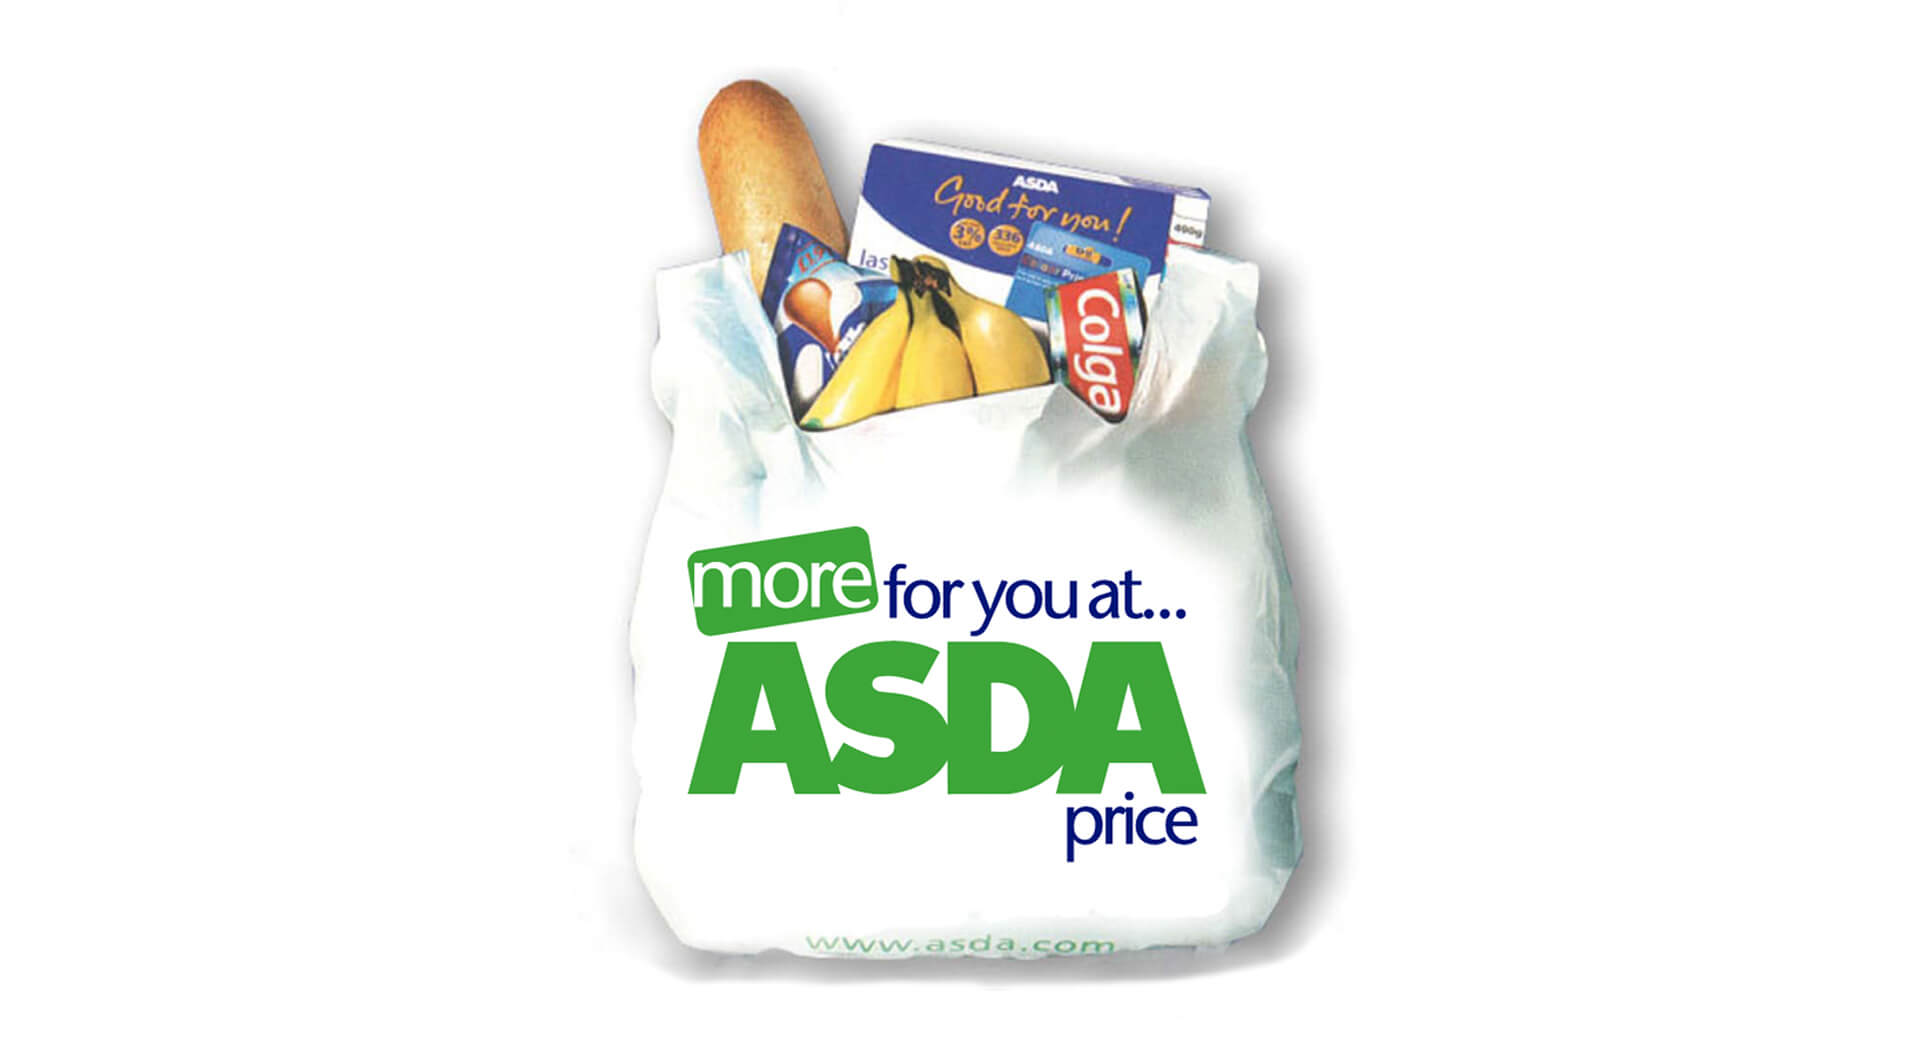 Asda shopping bag design more for you at Asda price